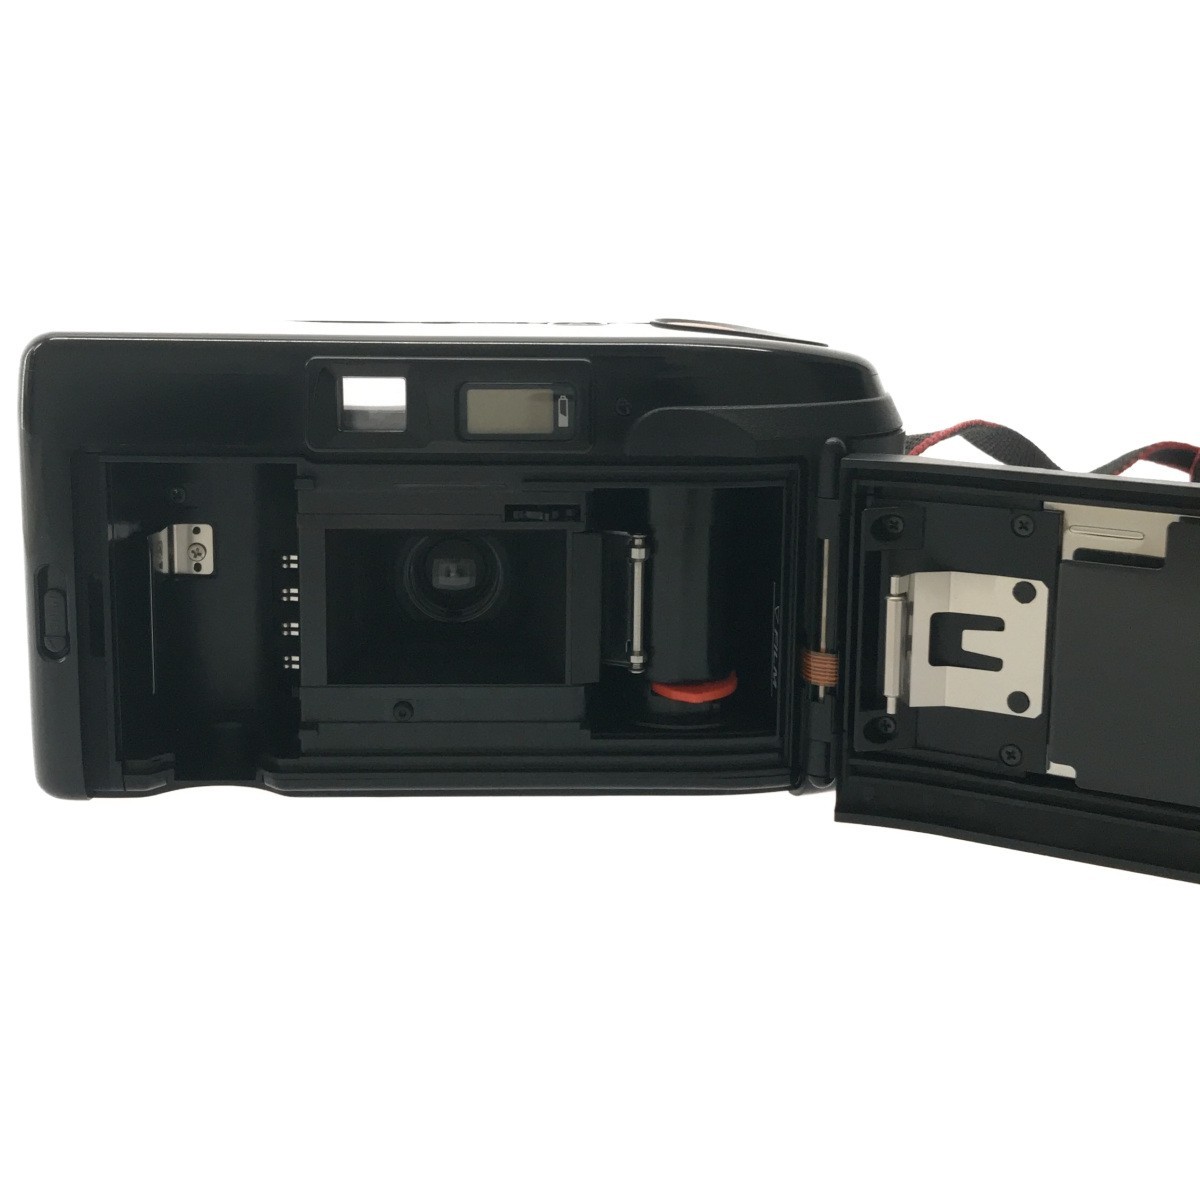 【 完動品 】Canon Autoboy 3 キャノン オートボーイ 38mm F2.8 単焦点レンズ搭載 コンパクトフィルムカメラ 人気機種  カメラケース C2549